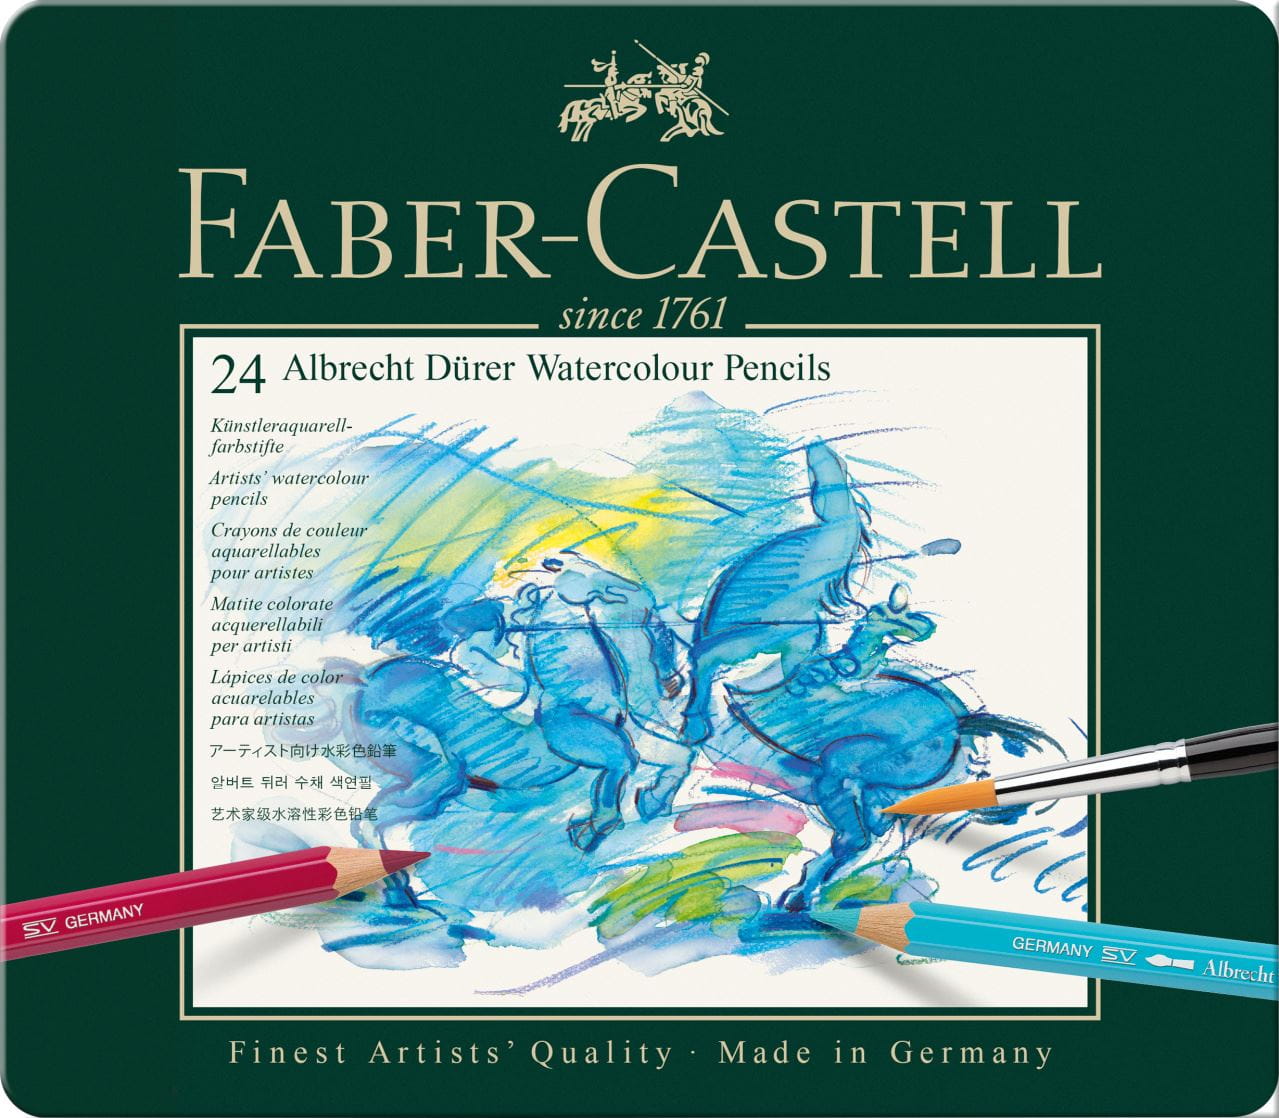 Faber-Castell - A.DÜRER 水溶彩铅   24色绿铁盒装